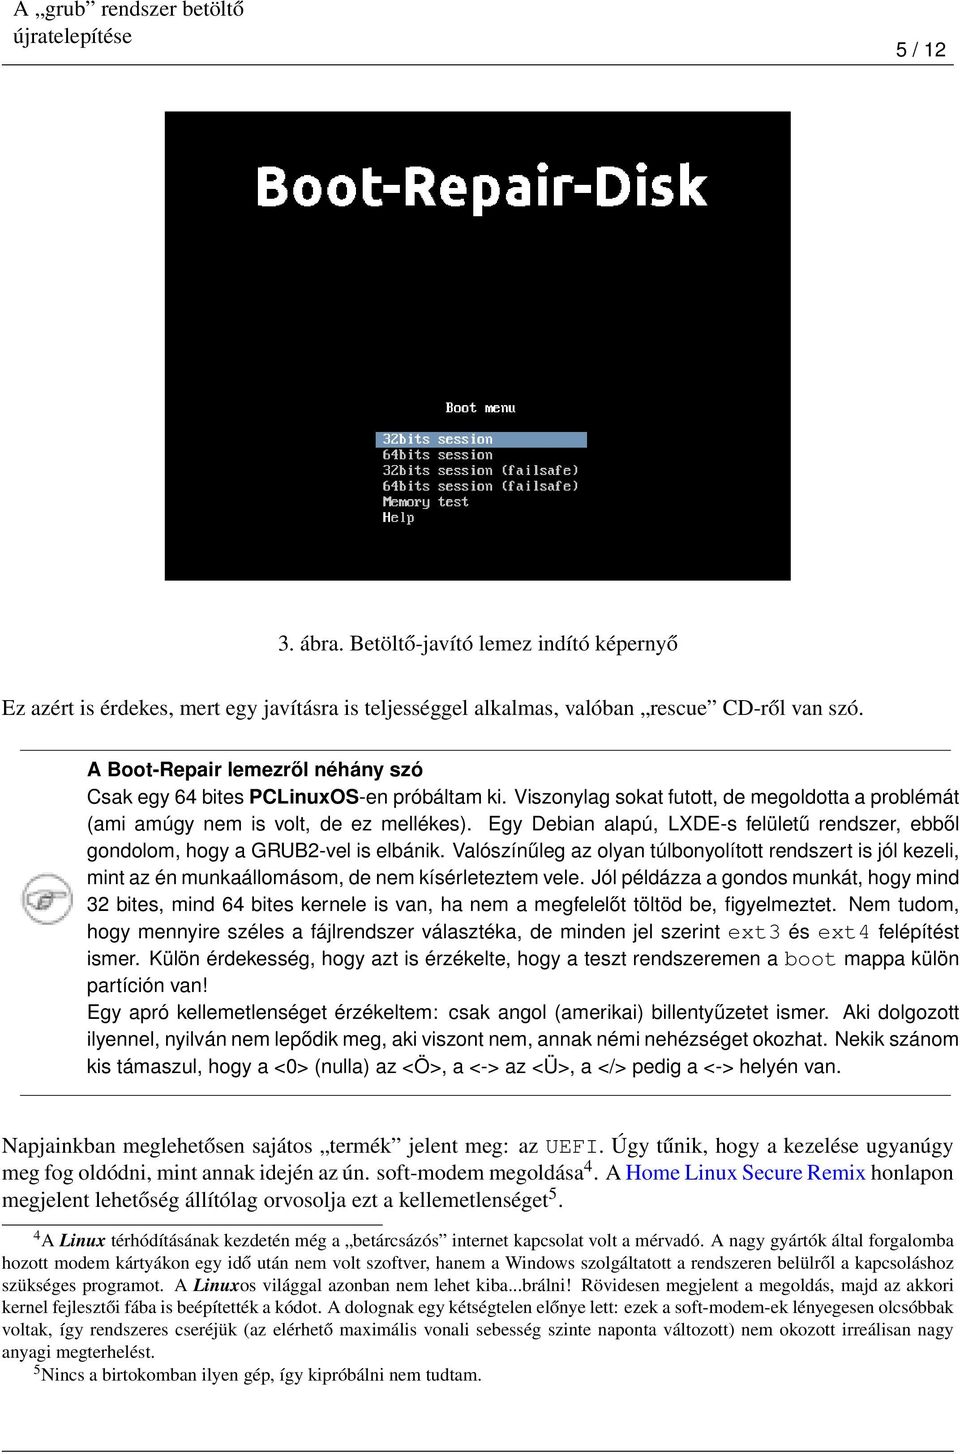 Egy Debian alapú, LXDE-s felületű rendszer, ebből gondolom, hogy a GRUB2-vel is elbánik.